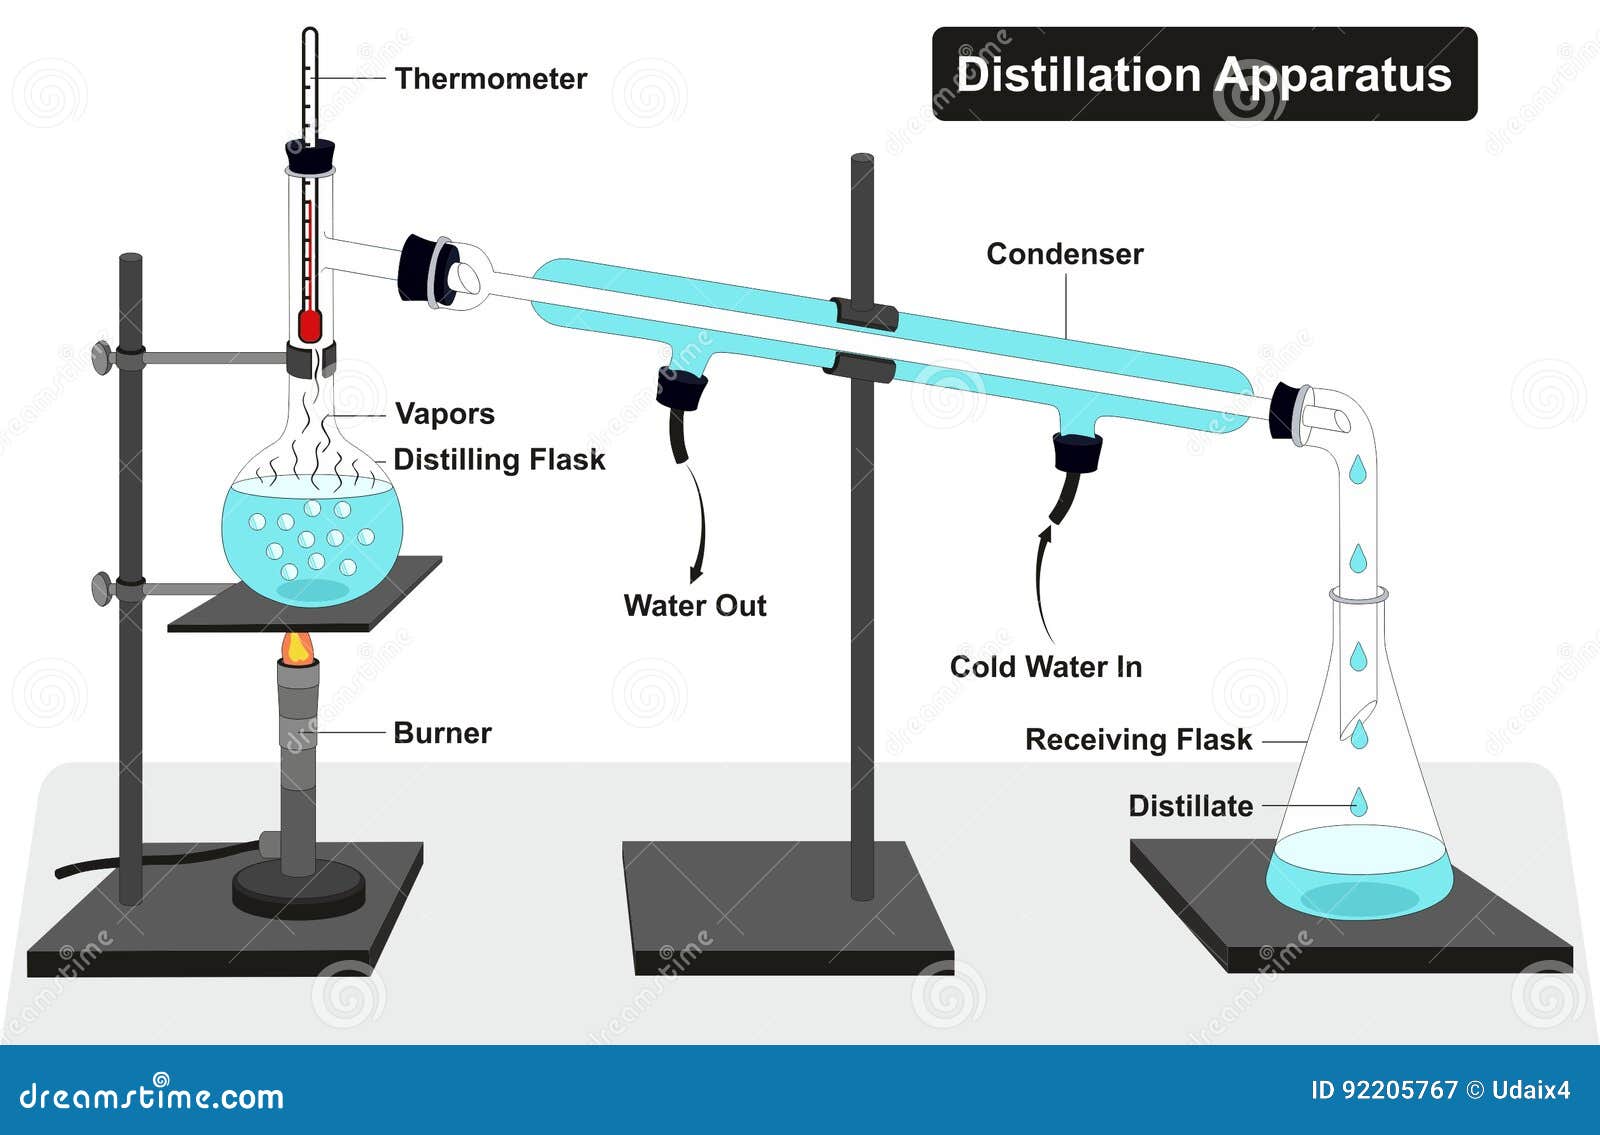 distillation apparatus diagram